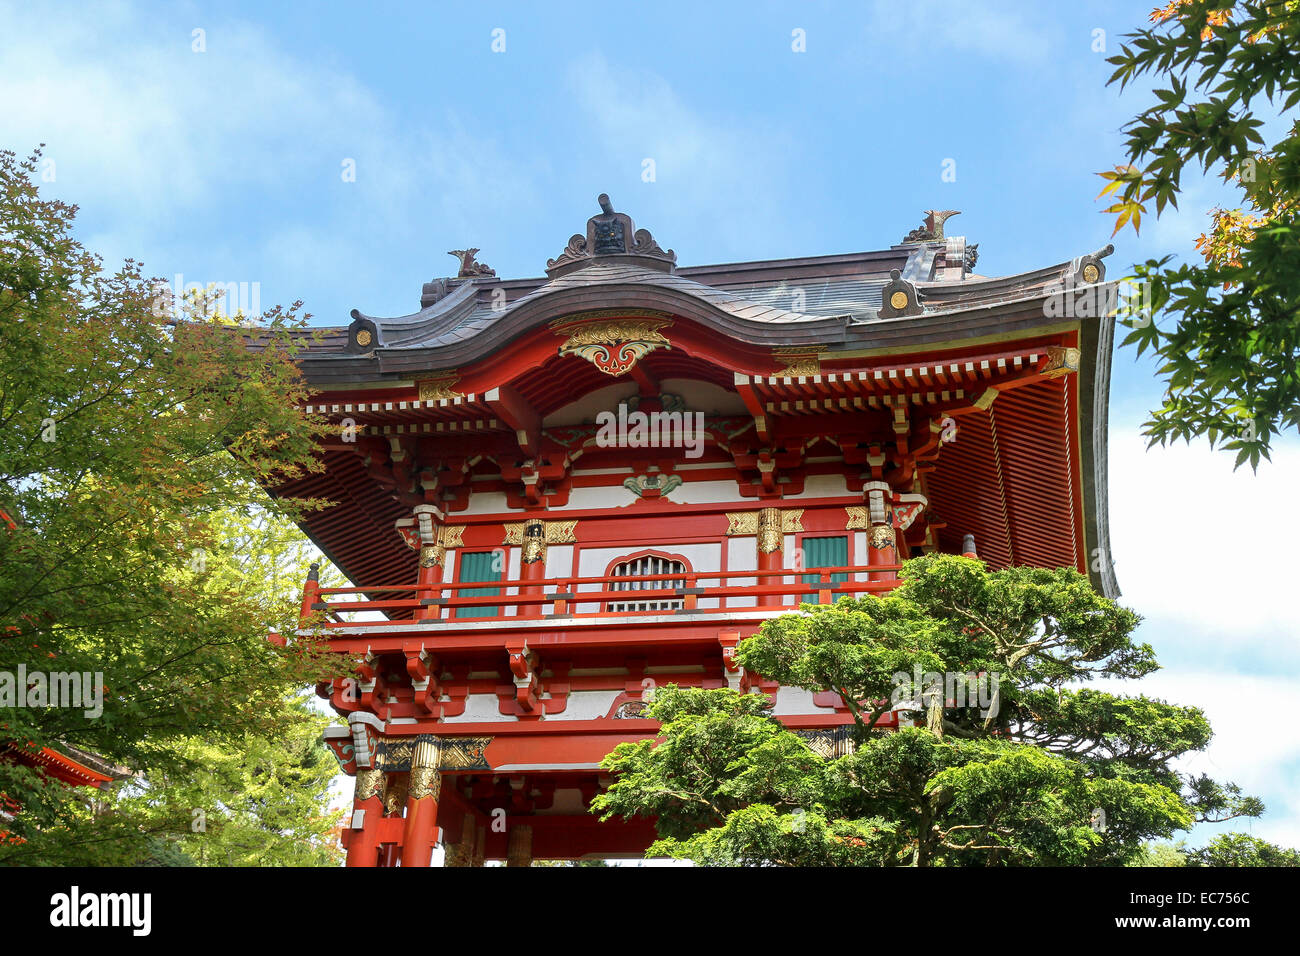 Pagoda, Japanese Tea Garden, Golden Gate Park, San Francisco, California Stock Photo